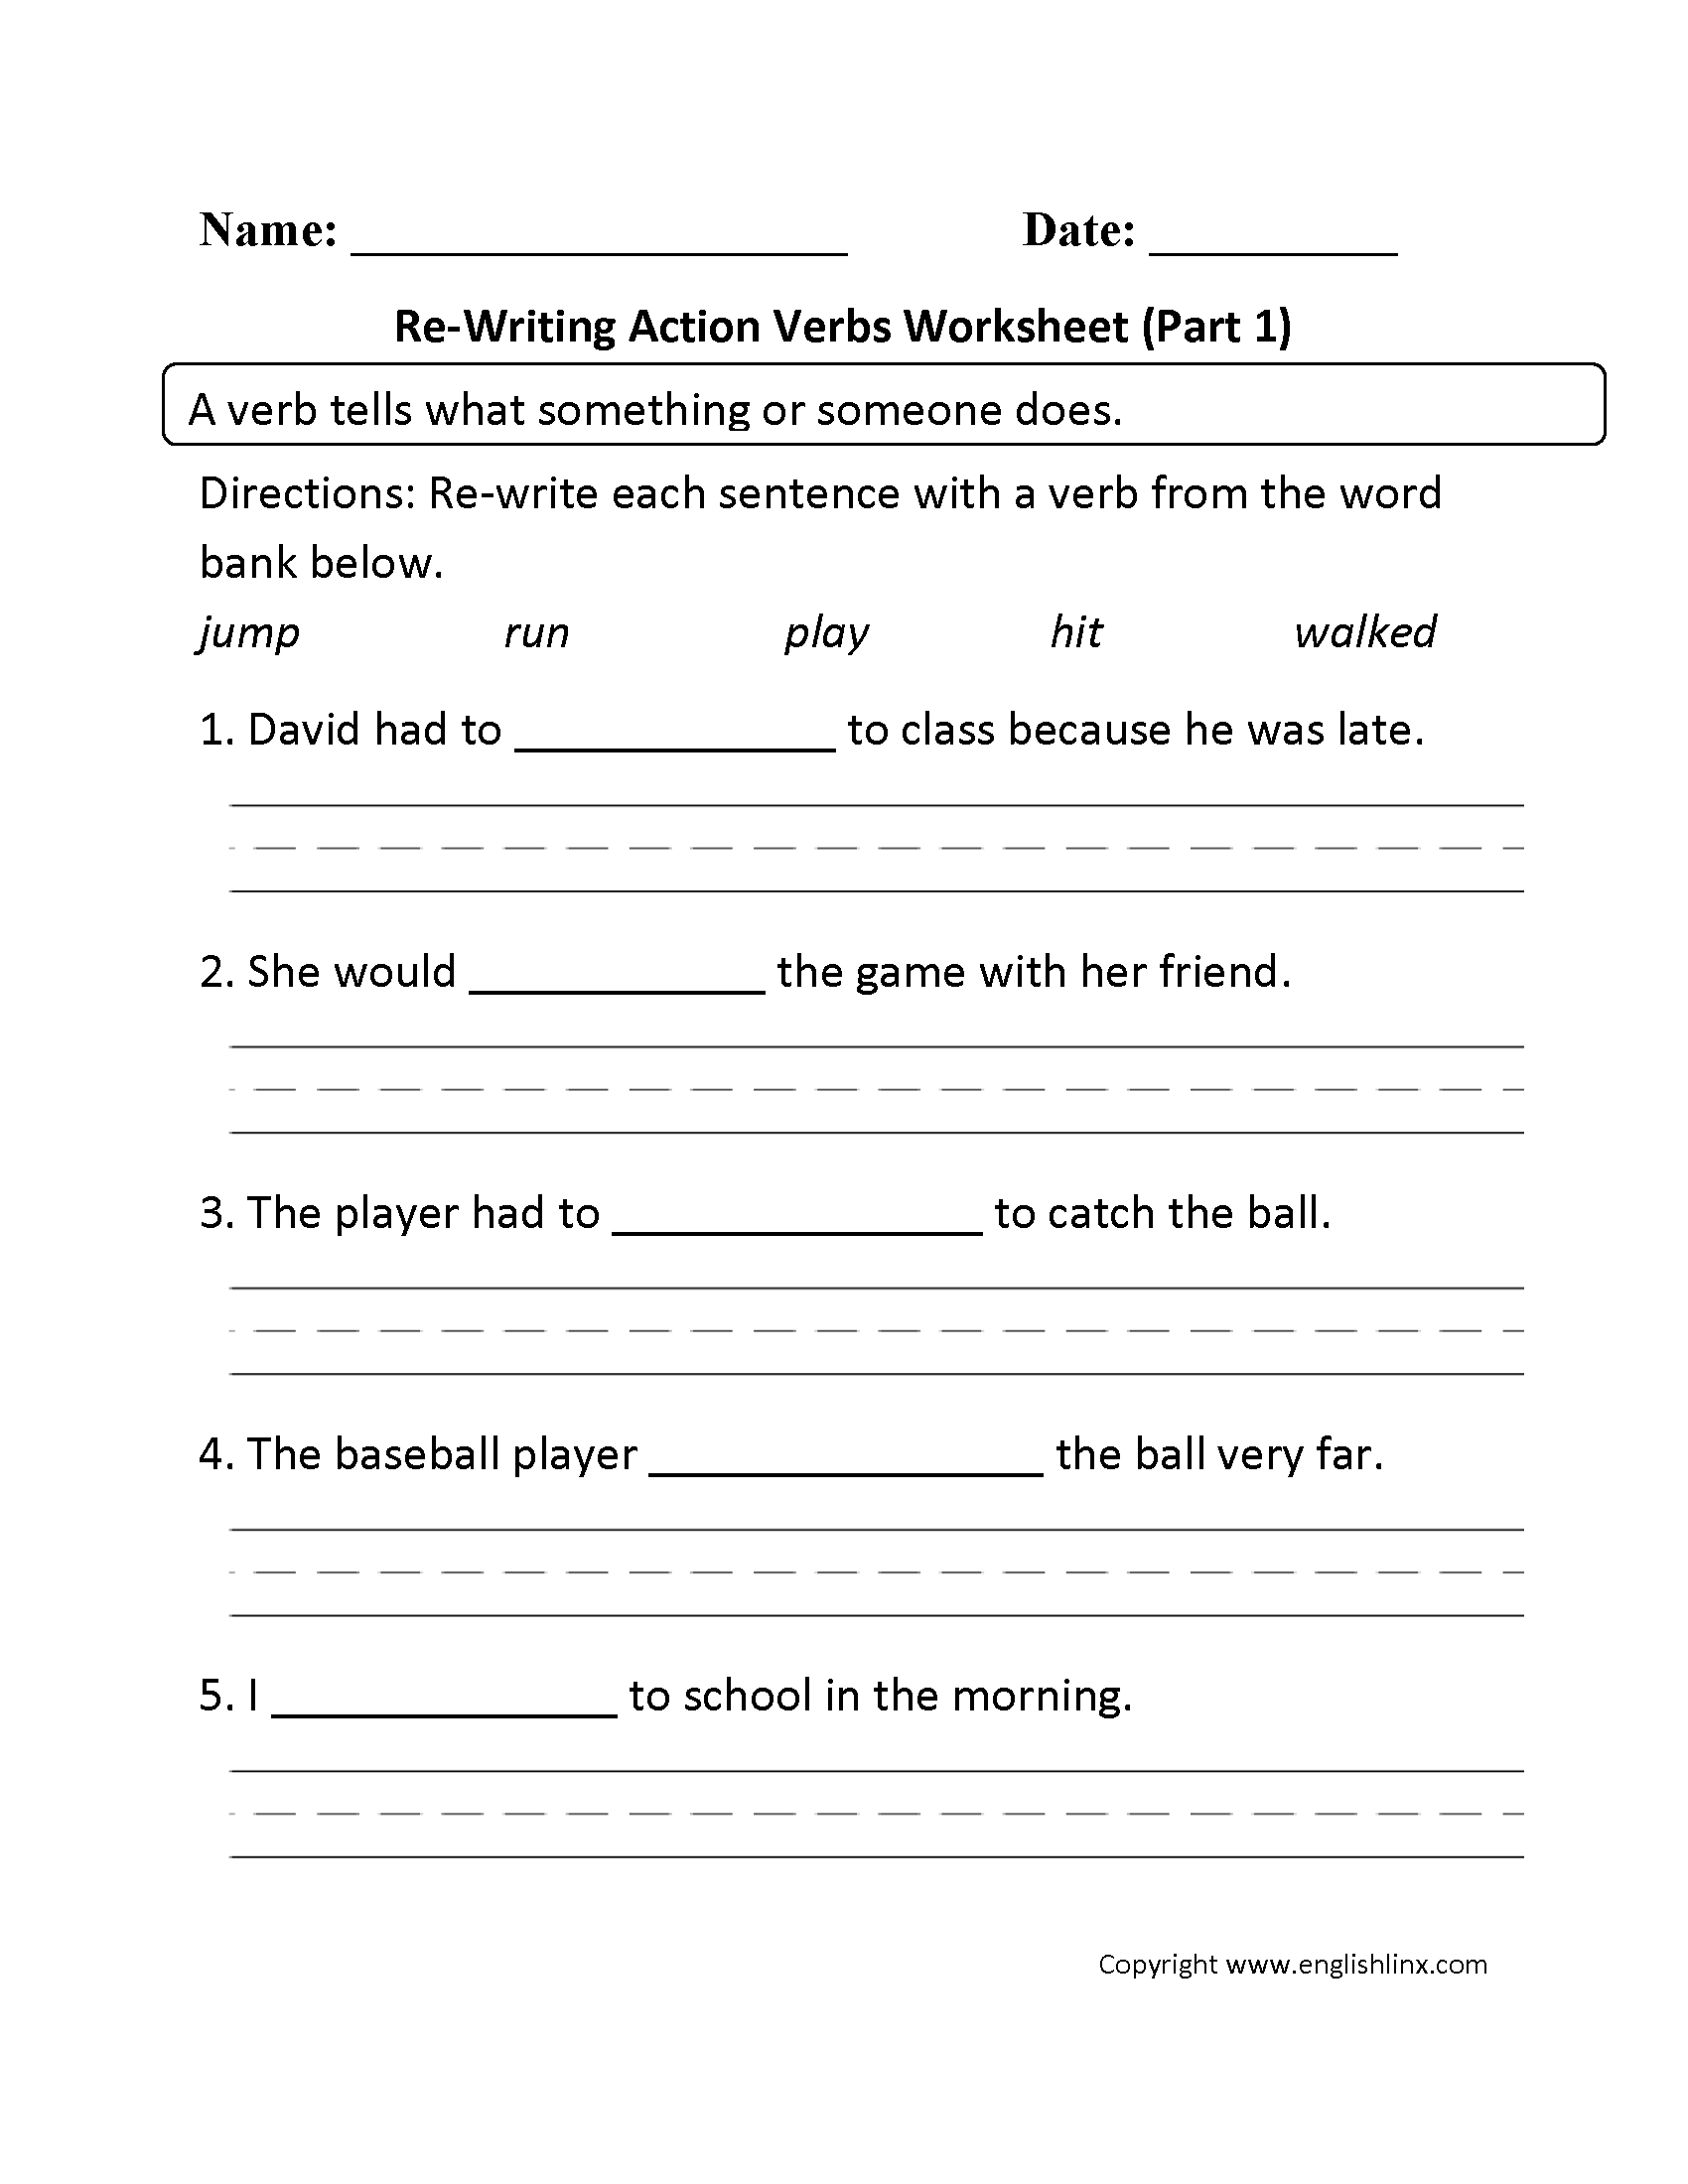 Verbs Worksheets | Action Verbs Worksheets - Free Printable Verb Worksheets